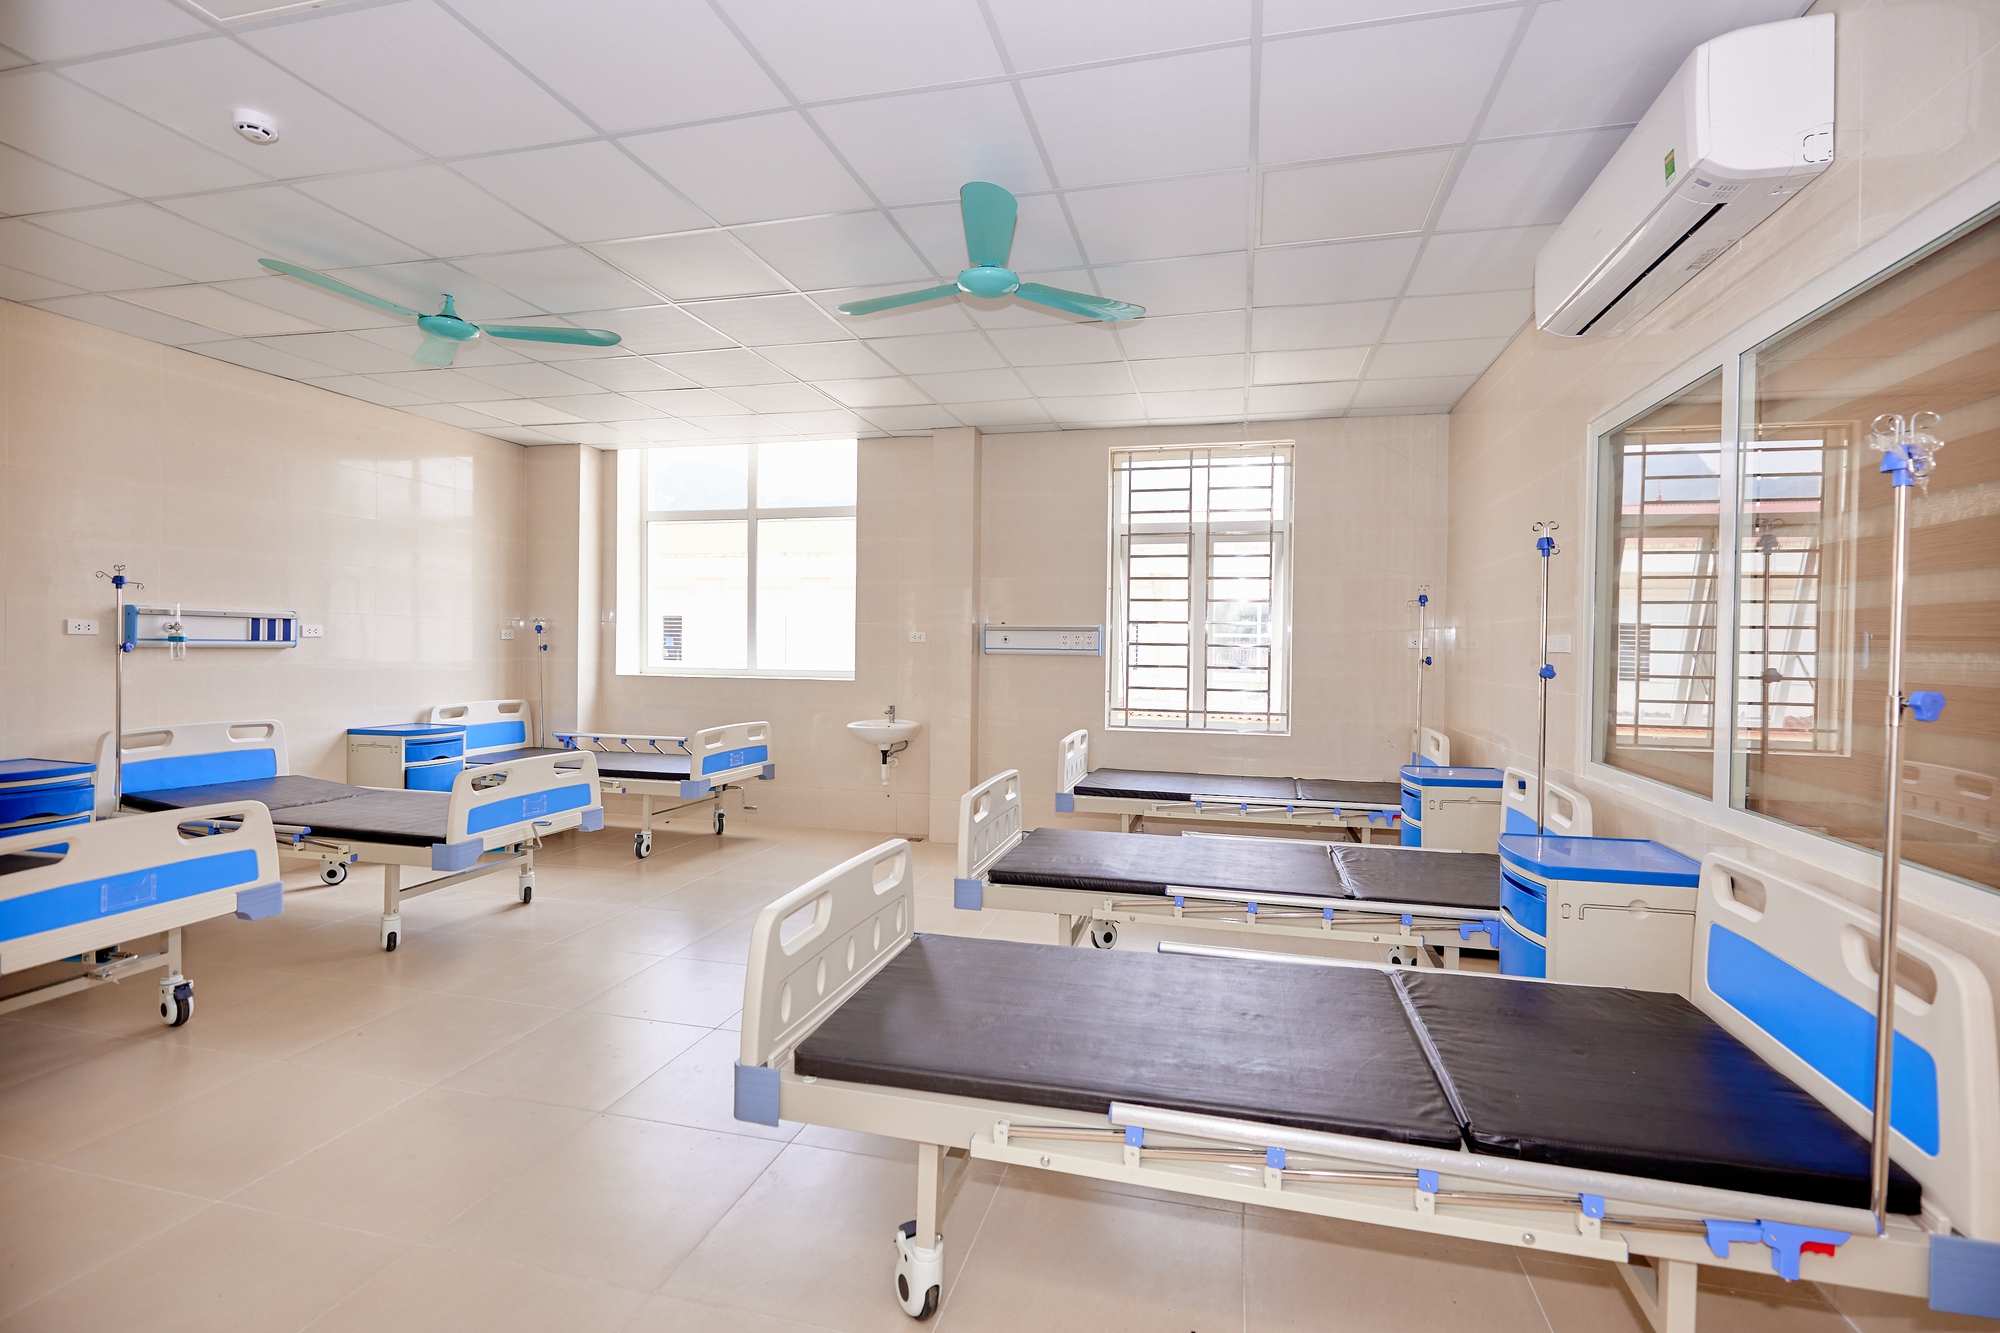 Đưa vào hoạt động Nhà khám chữa bệnh - Bệnh viện Đa khoa huyện Định Hóa (Thái Nguyên) do Tập đoàn Sun Group tài trợ - Ảnh 3.